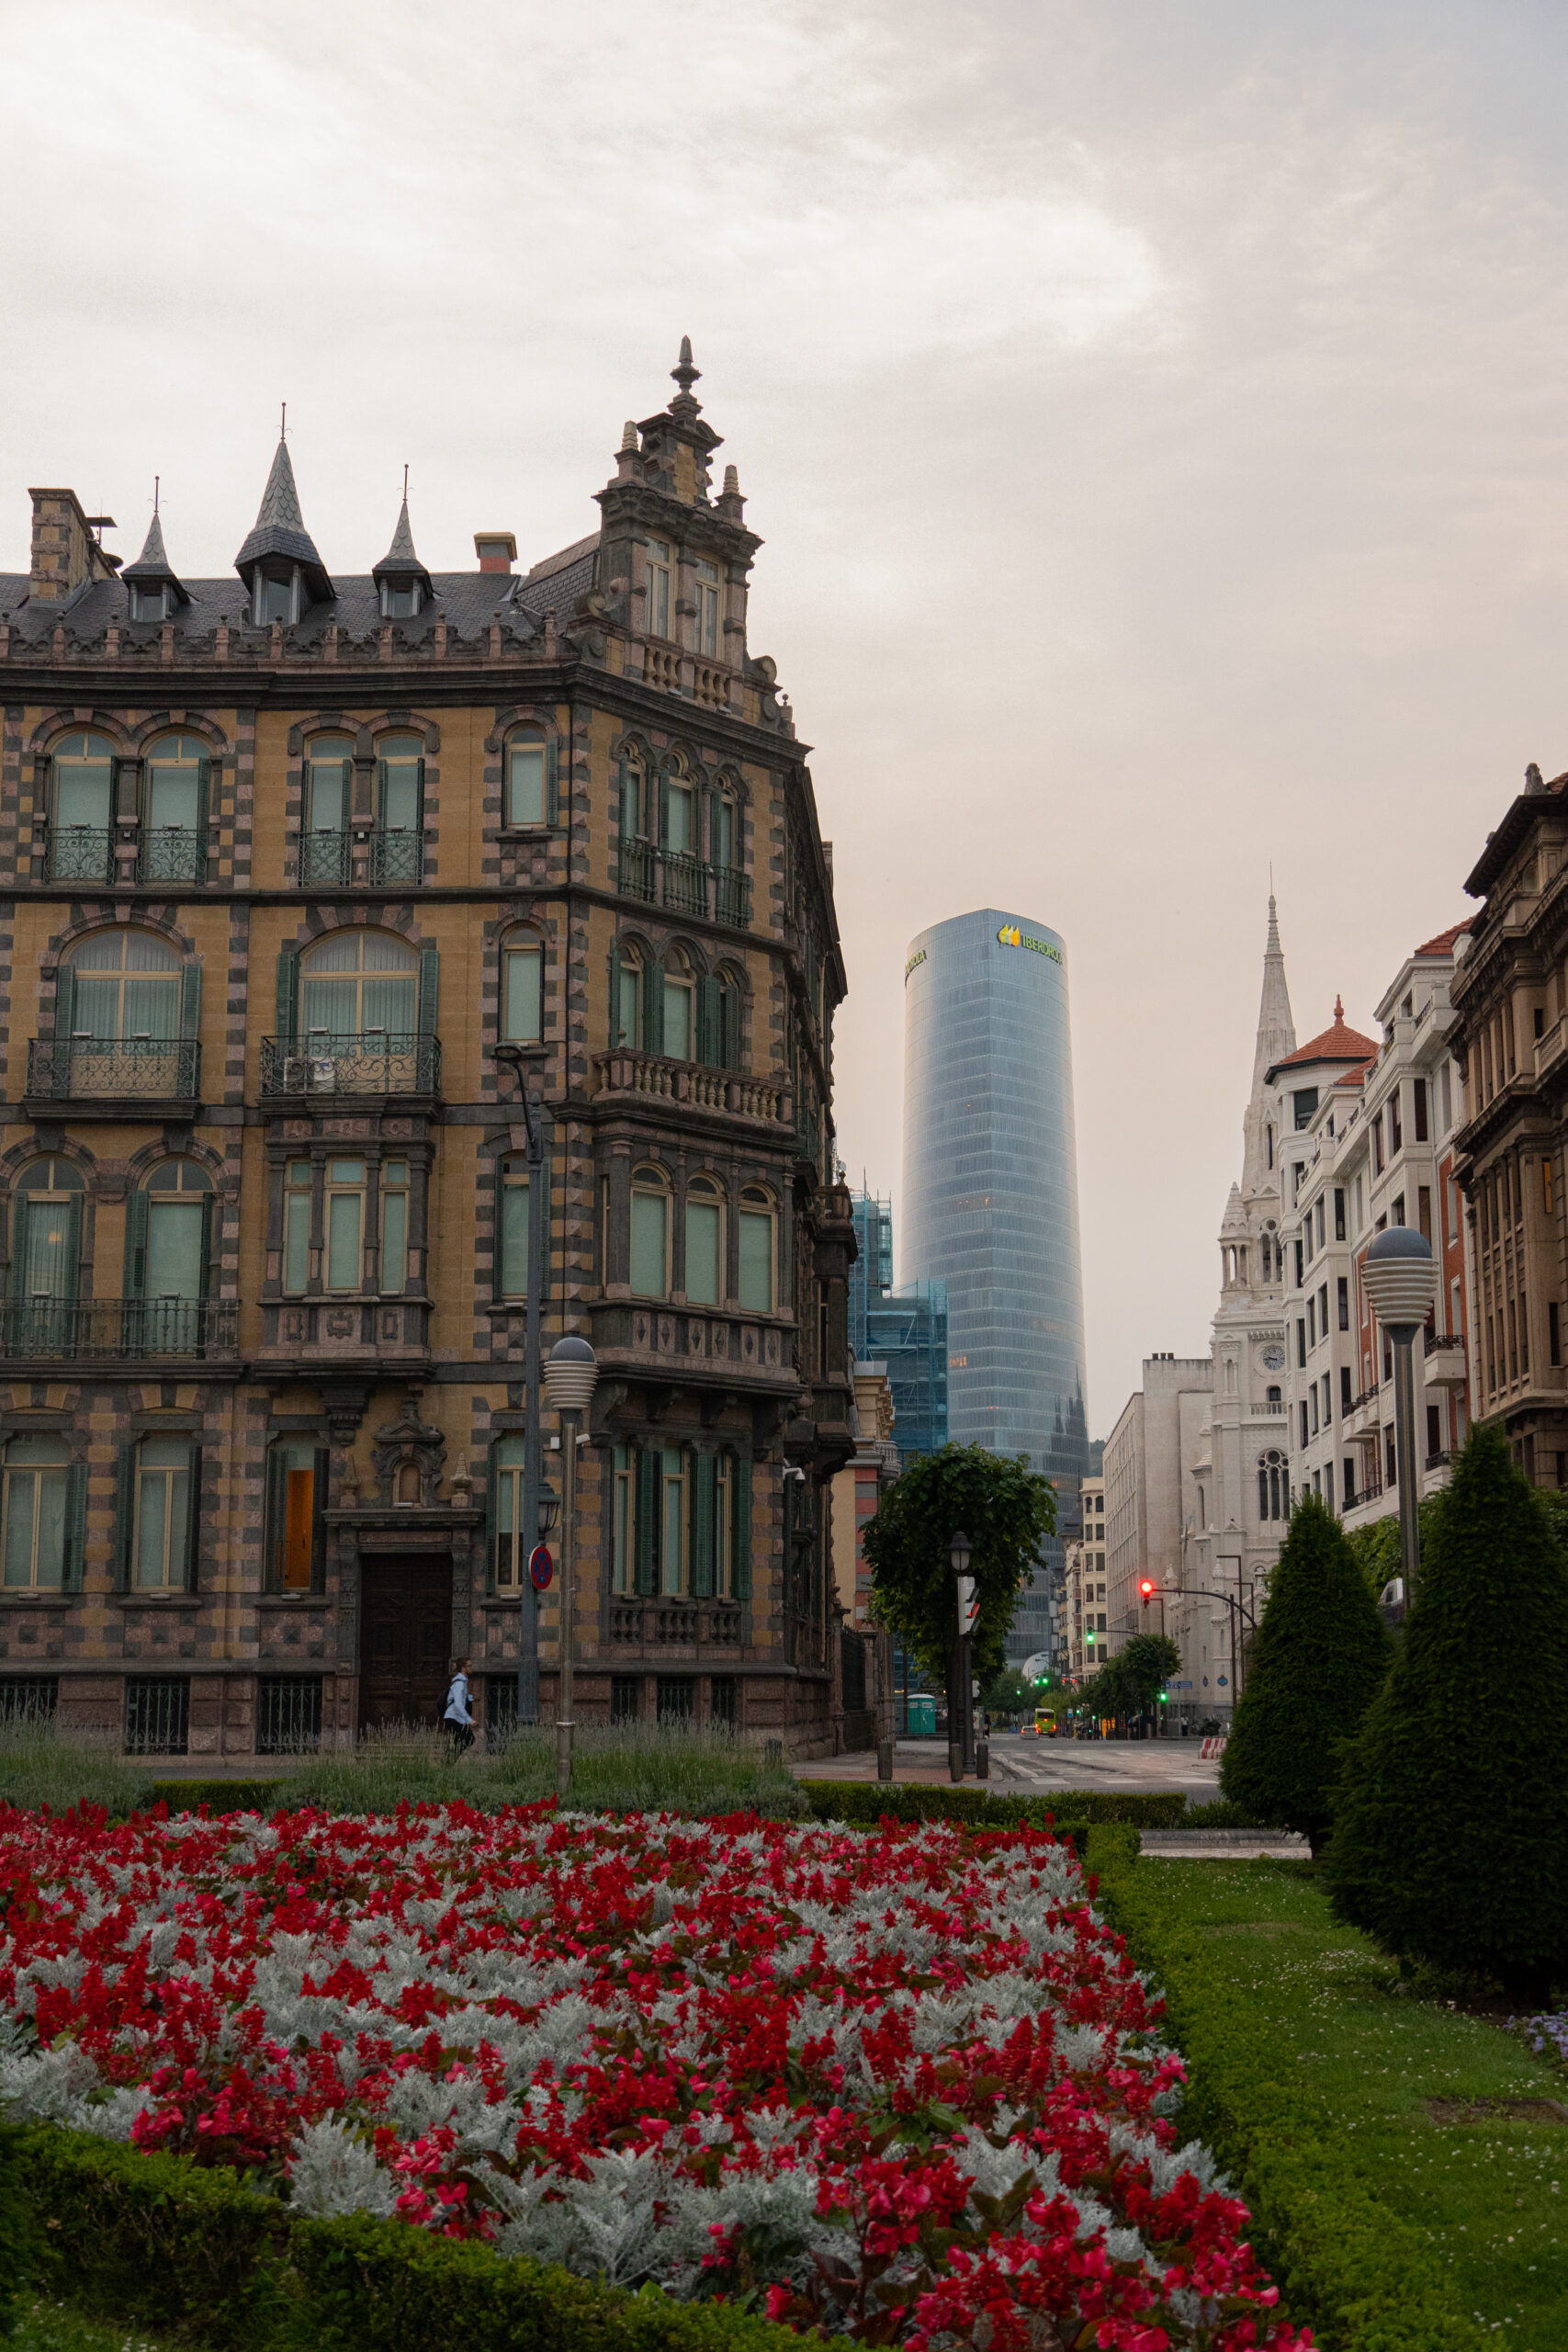 Bild: Innenstadt Bilbao, Häuser mit rot-weißen Blumen